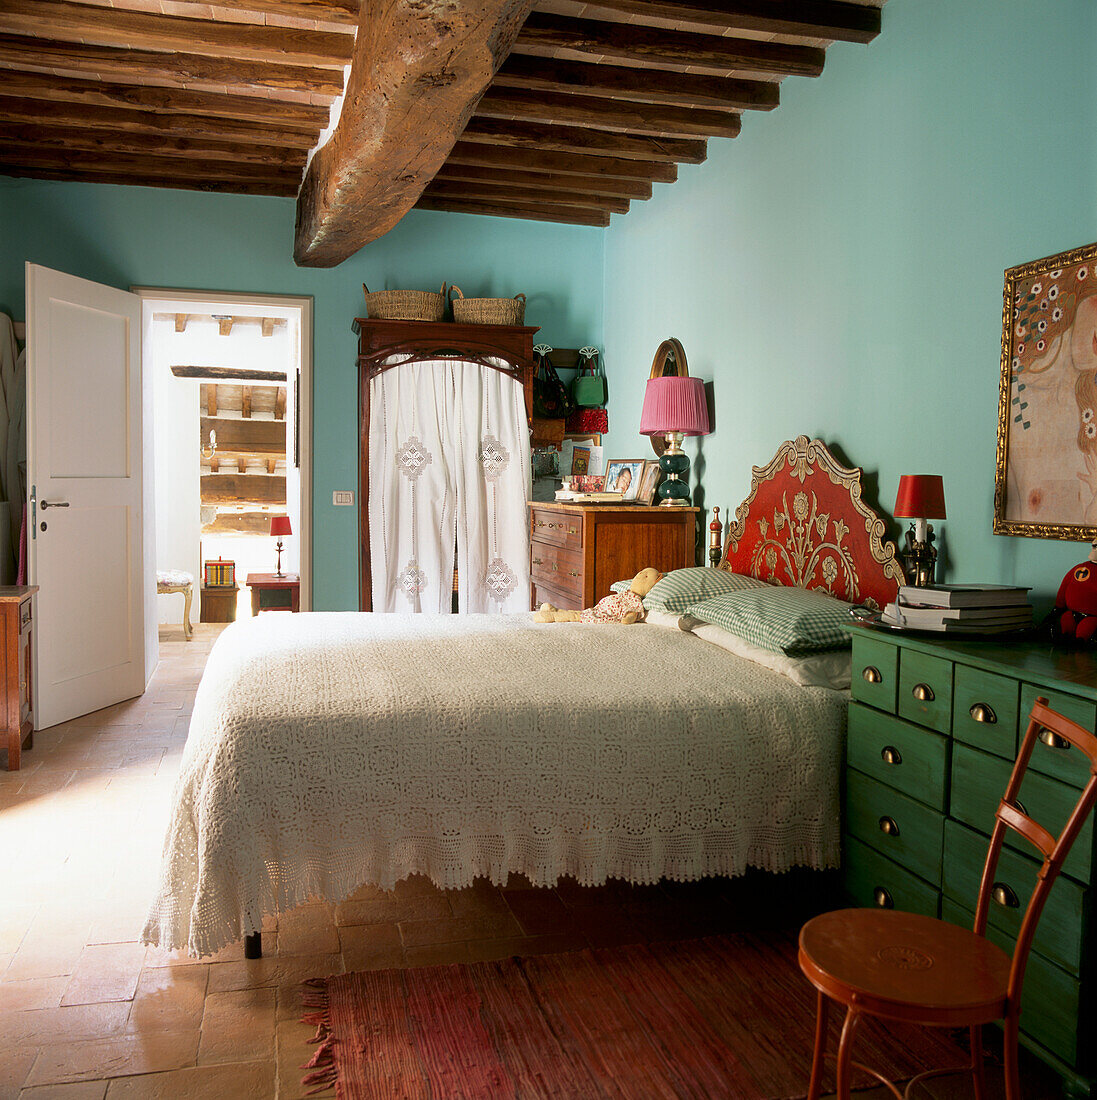 Hauptschlafzimmer mit zartblau gestrichenem Bett, das mit einer hübschen Spitzendecke und einem goldfarbenen und roten dekorativen Barockkopfteil versehen ist